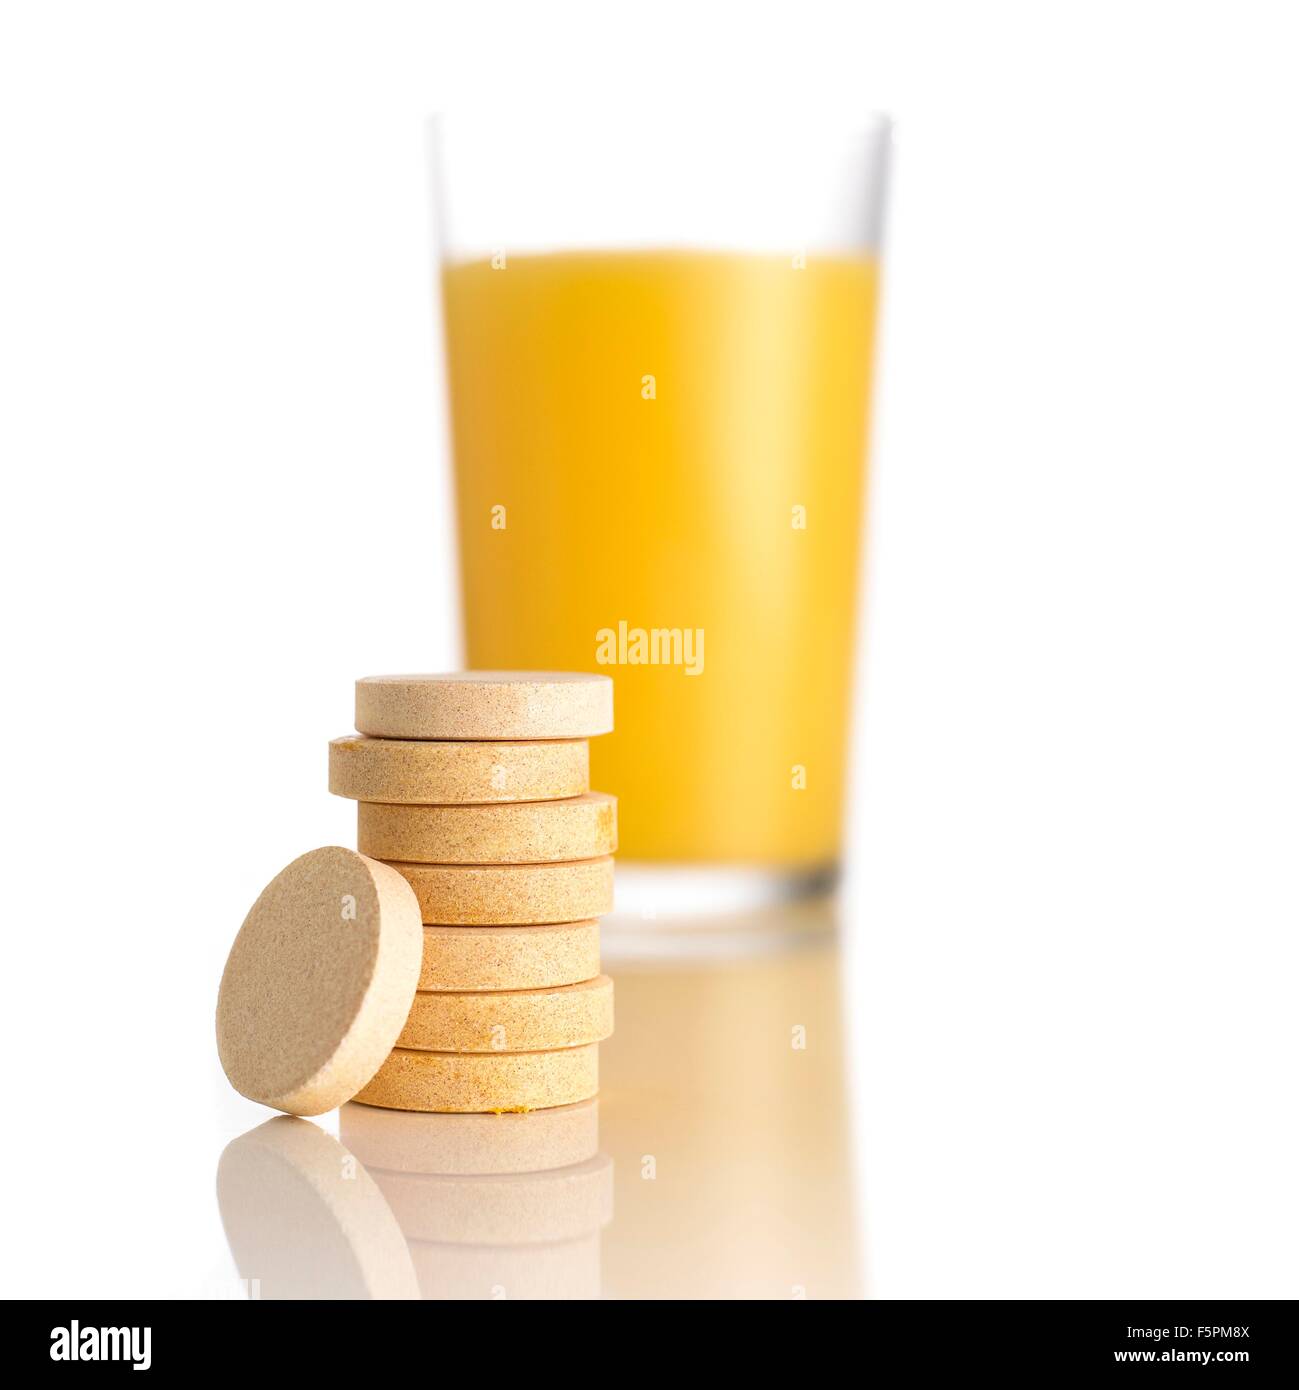 El jugo de naranja y tabletas de vitamina c contra un fondo blanco. Foto de stock